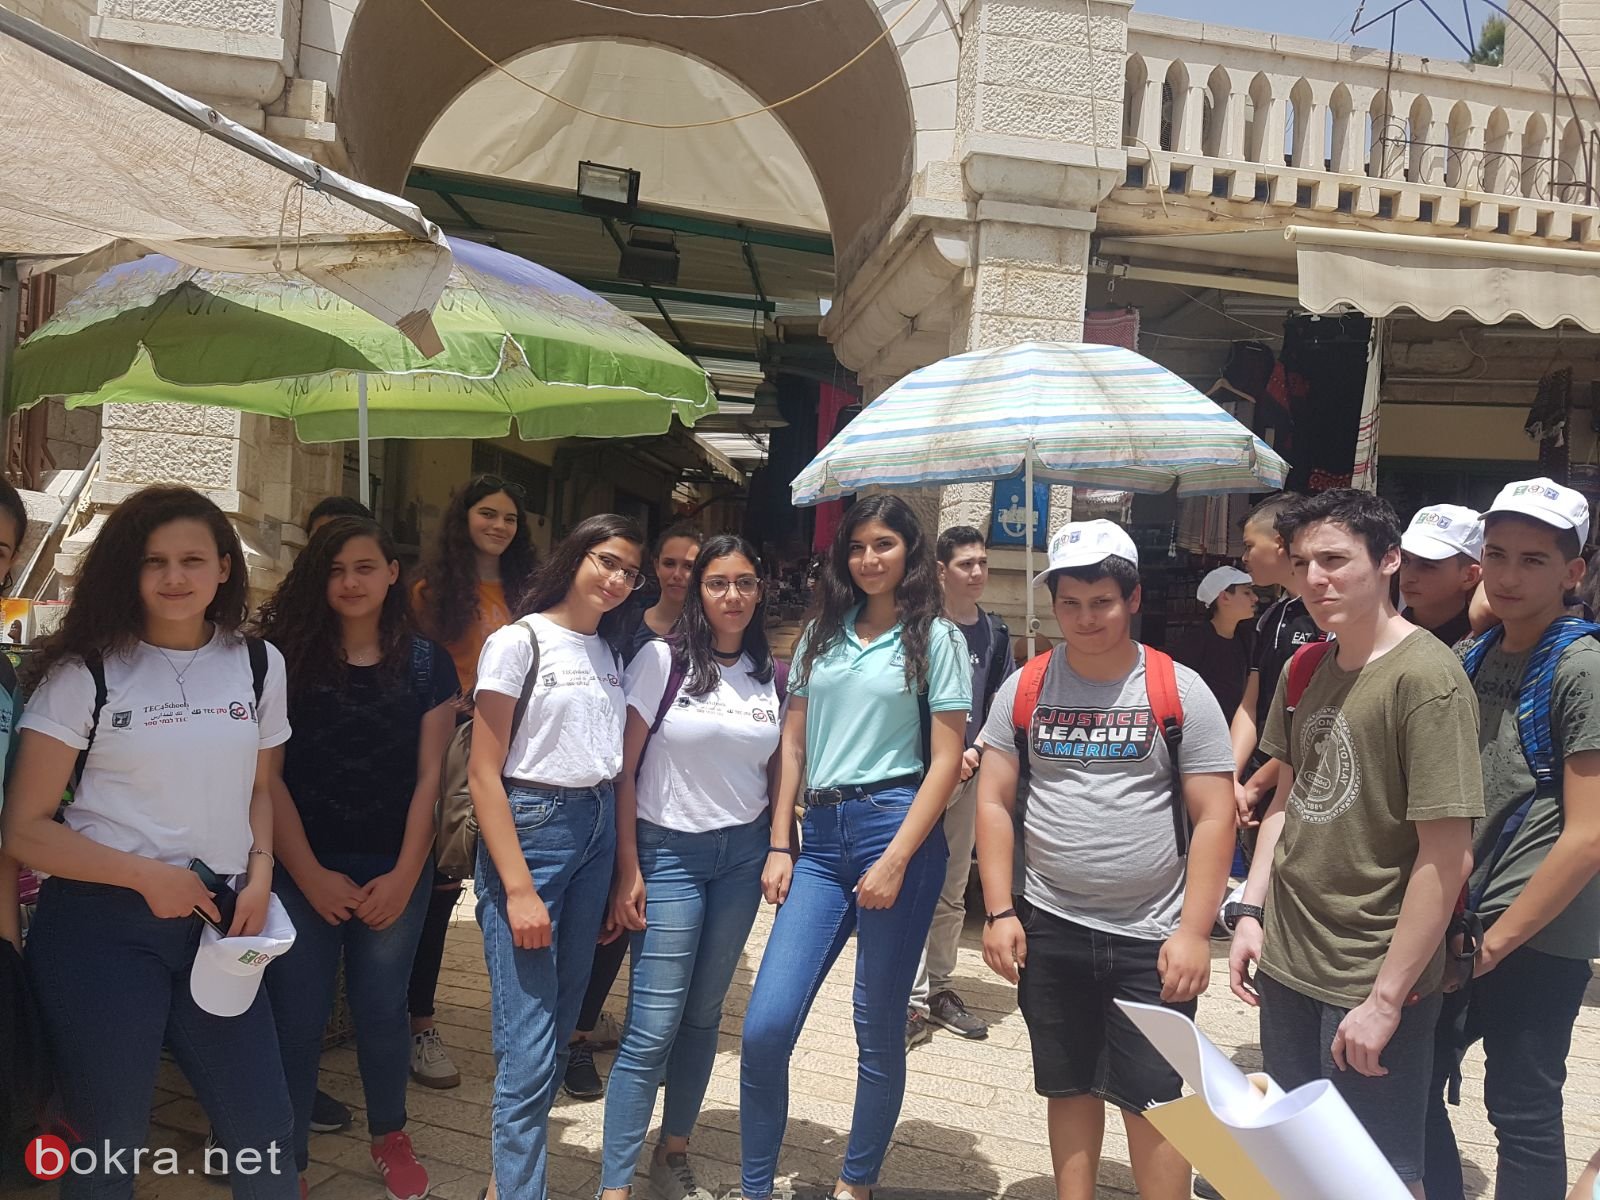 اعدادية الحلان- سخنين،ومطران الناصرة وتيخونت تل ابيب ضمن مشروع Tec4schools-1